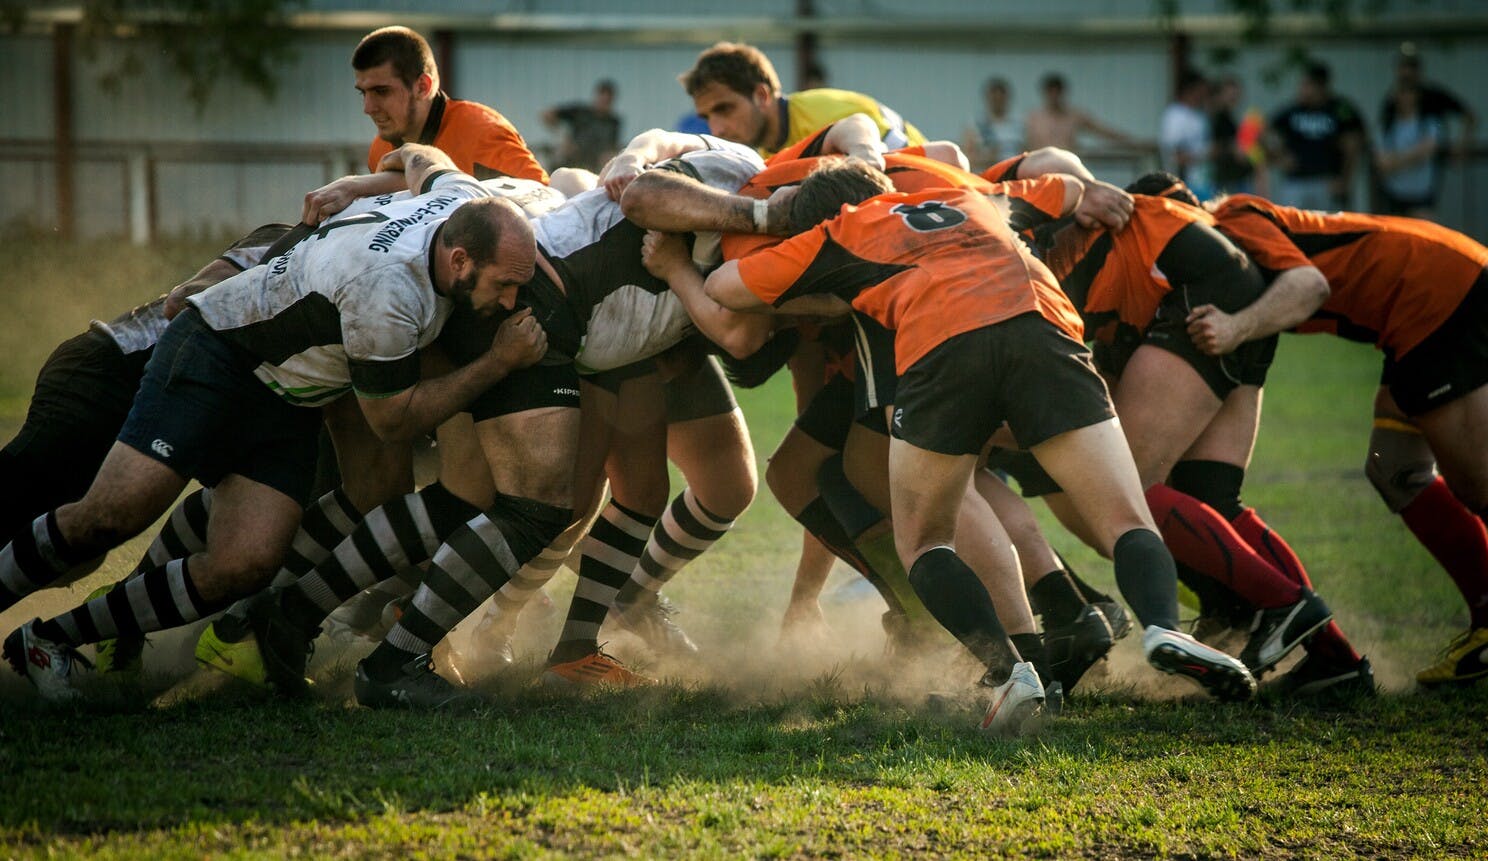 El marco de trabajo ágil utiliza conceptos del juego de rugby, como el Scrum que se muestra en la figura.